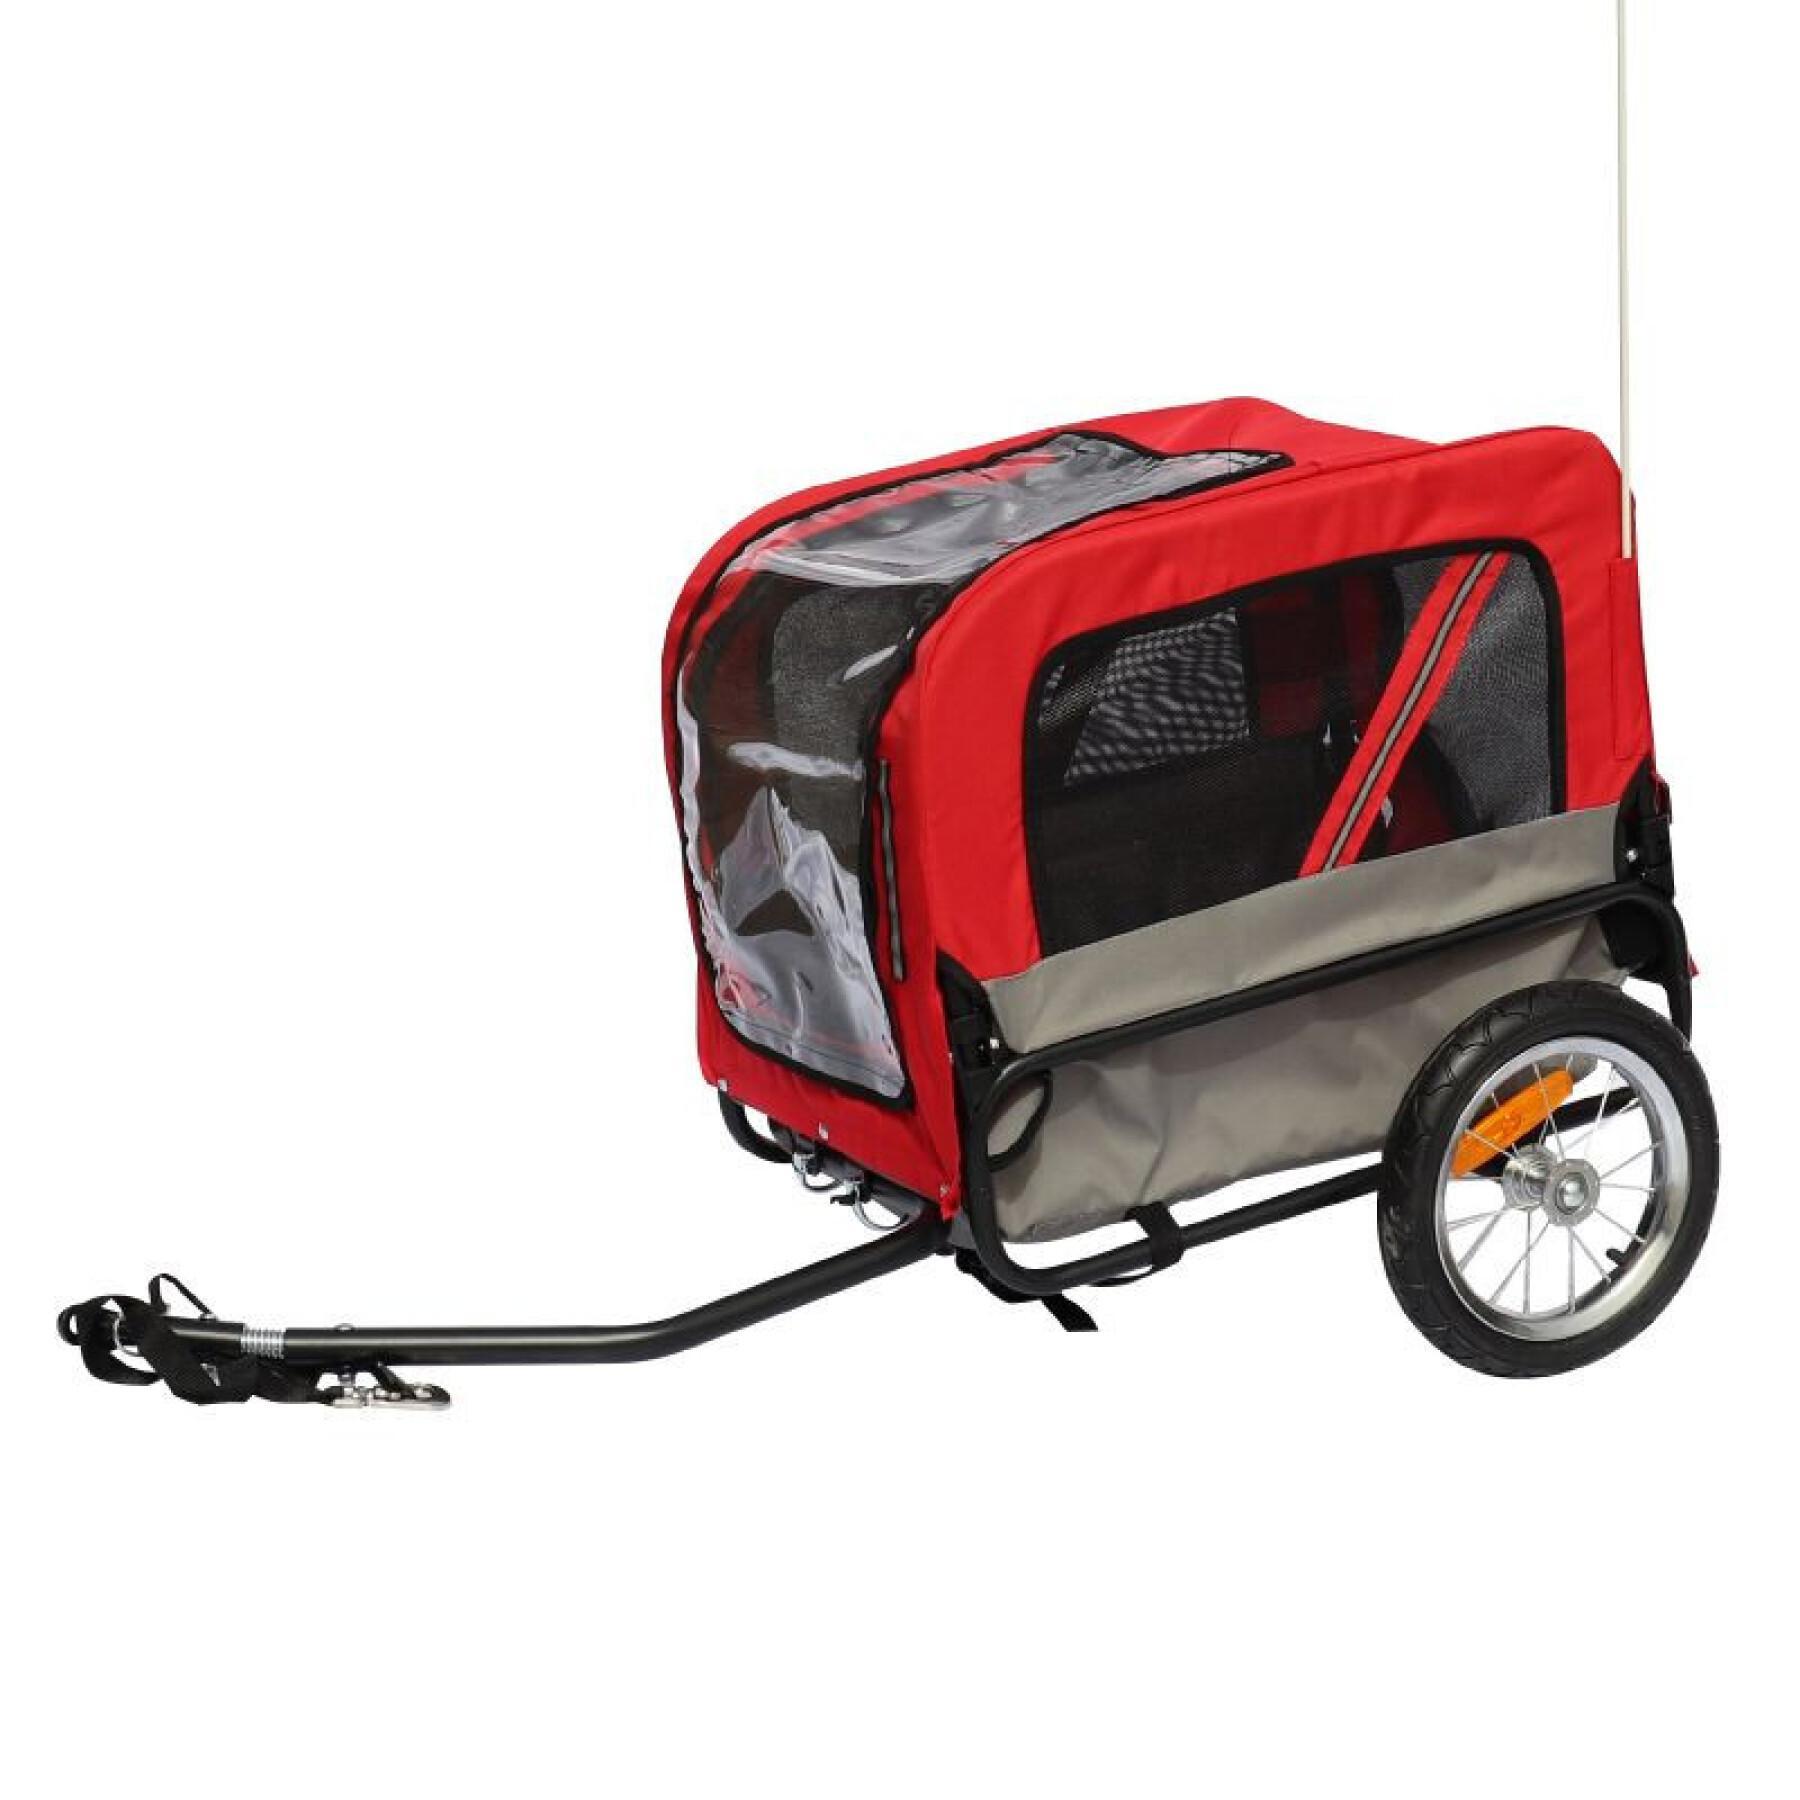 Reboque utilitário com rodas e fixação ao eixo da roda traseira - para transporte de cães e bagagens - 2 aberturas (frente+traseira) + braço extra P2R Maxi